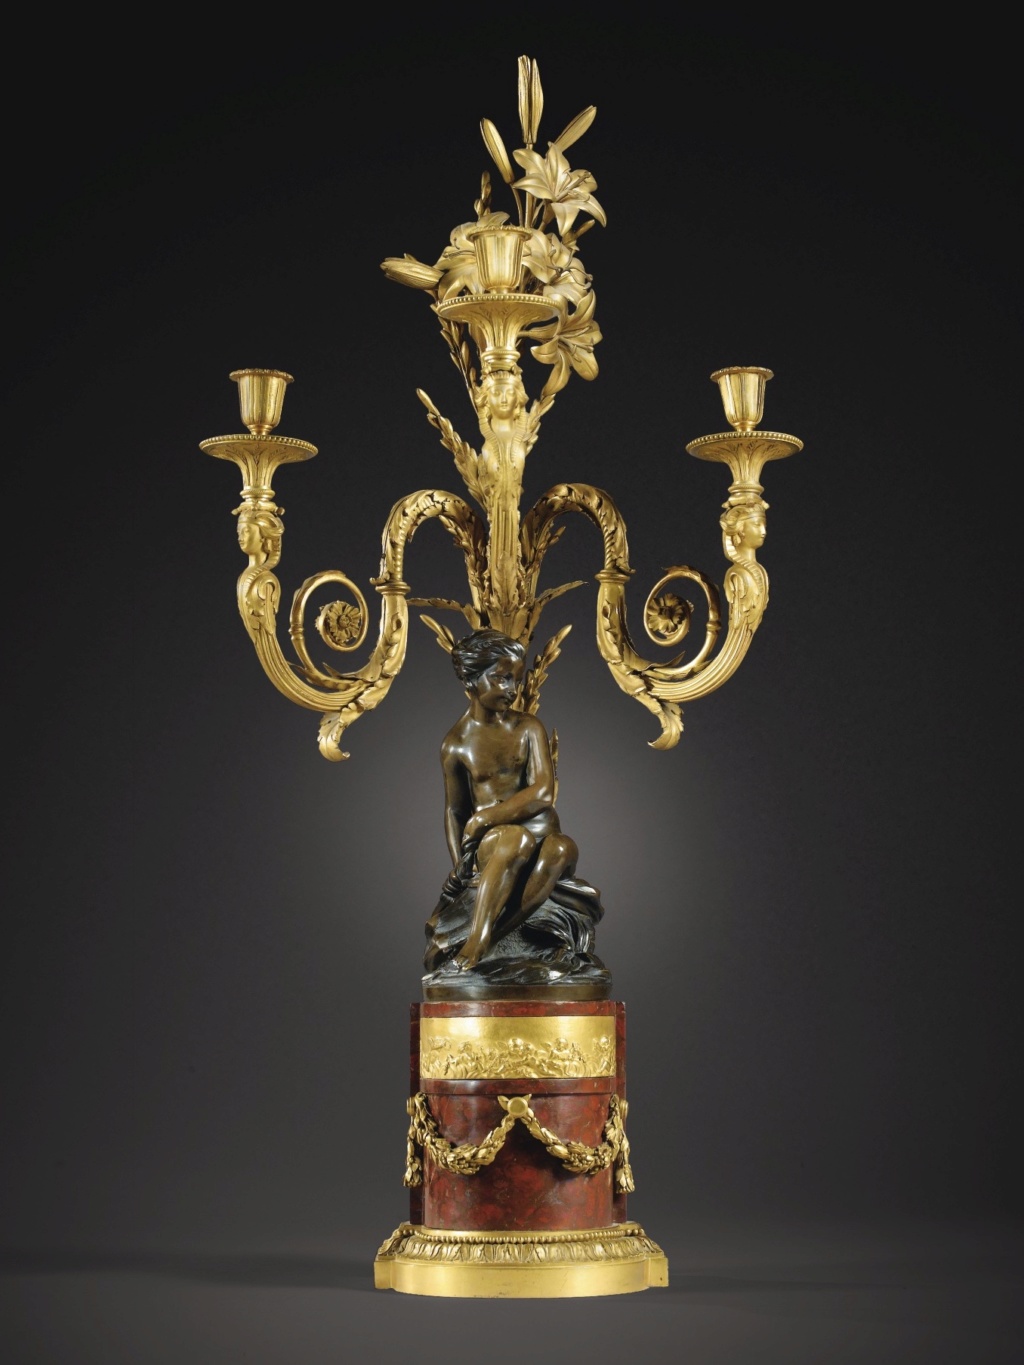 L'Amour menaçant de Falconet, l'oeuvre sculptée la plus reproduite au XVIIIe siècle et après ?  009pf111